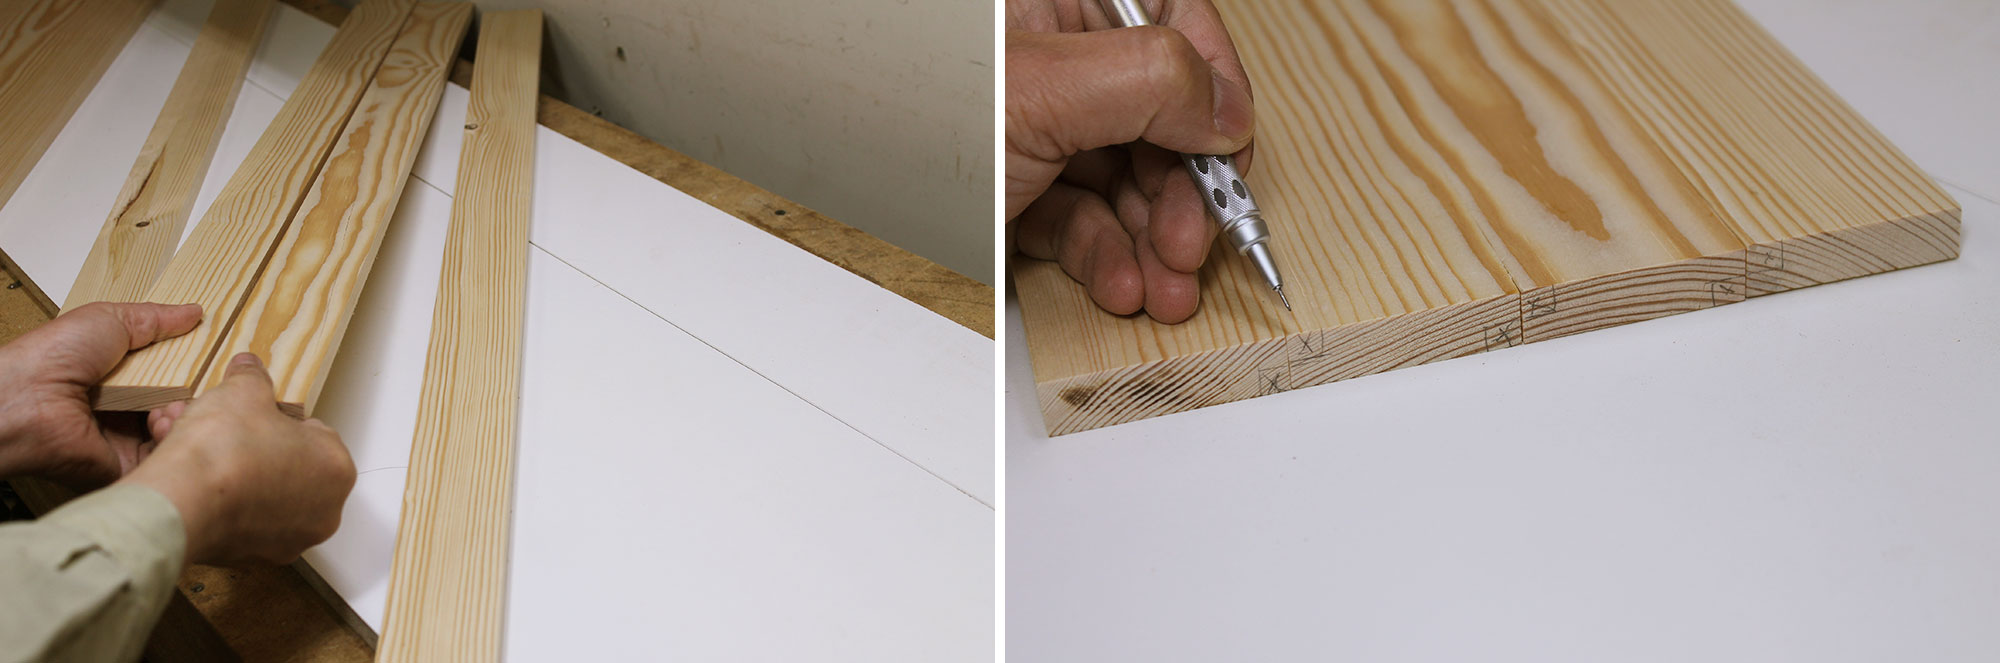 Image left: Arranging slats for grain match. Image right: Marking waste.